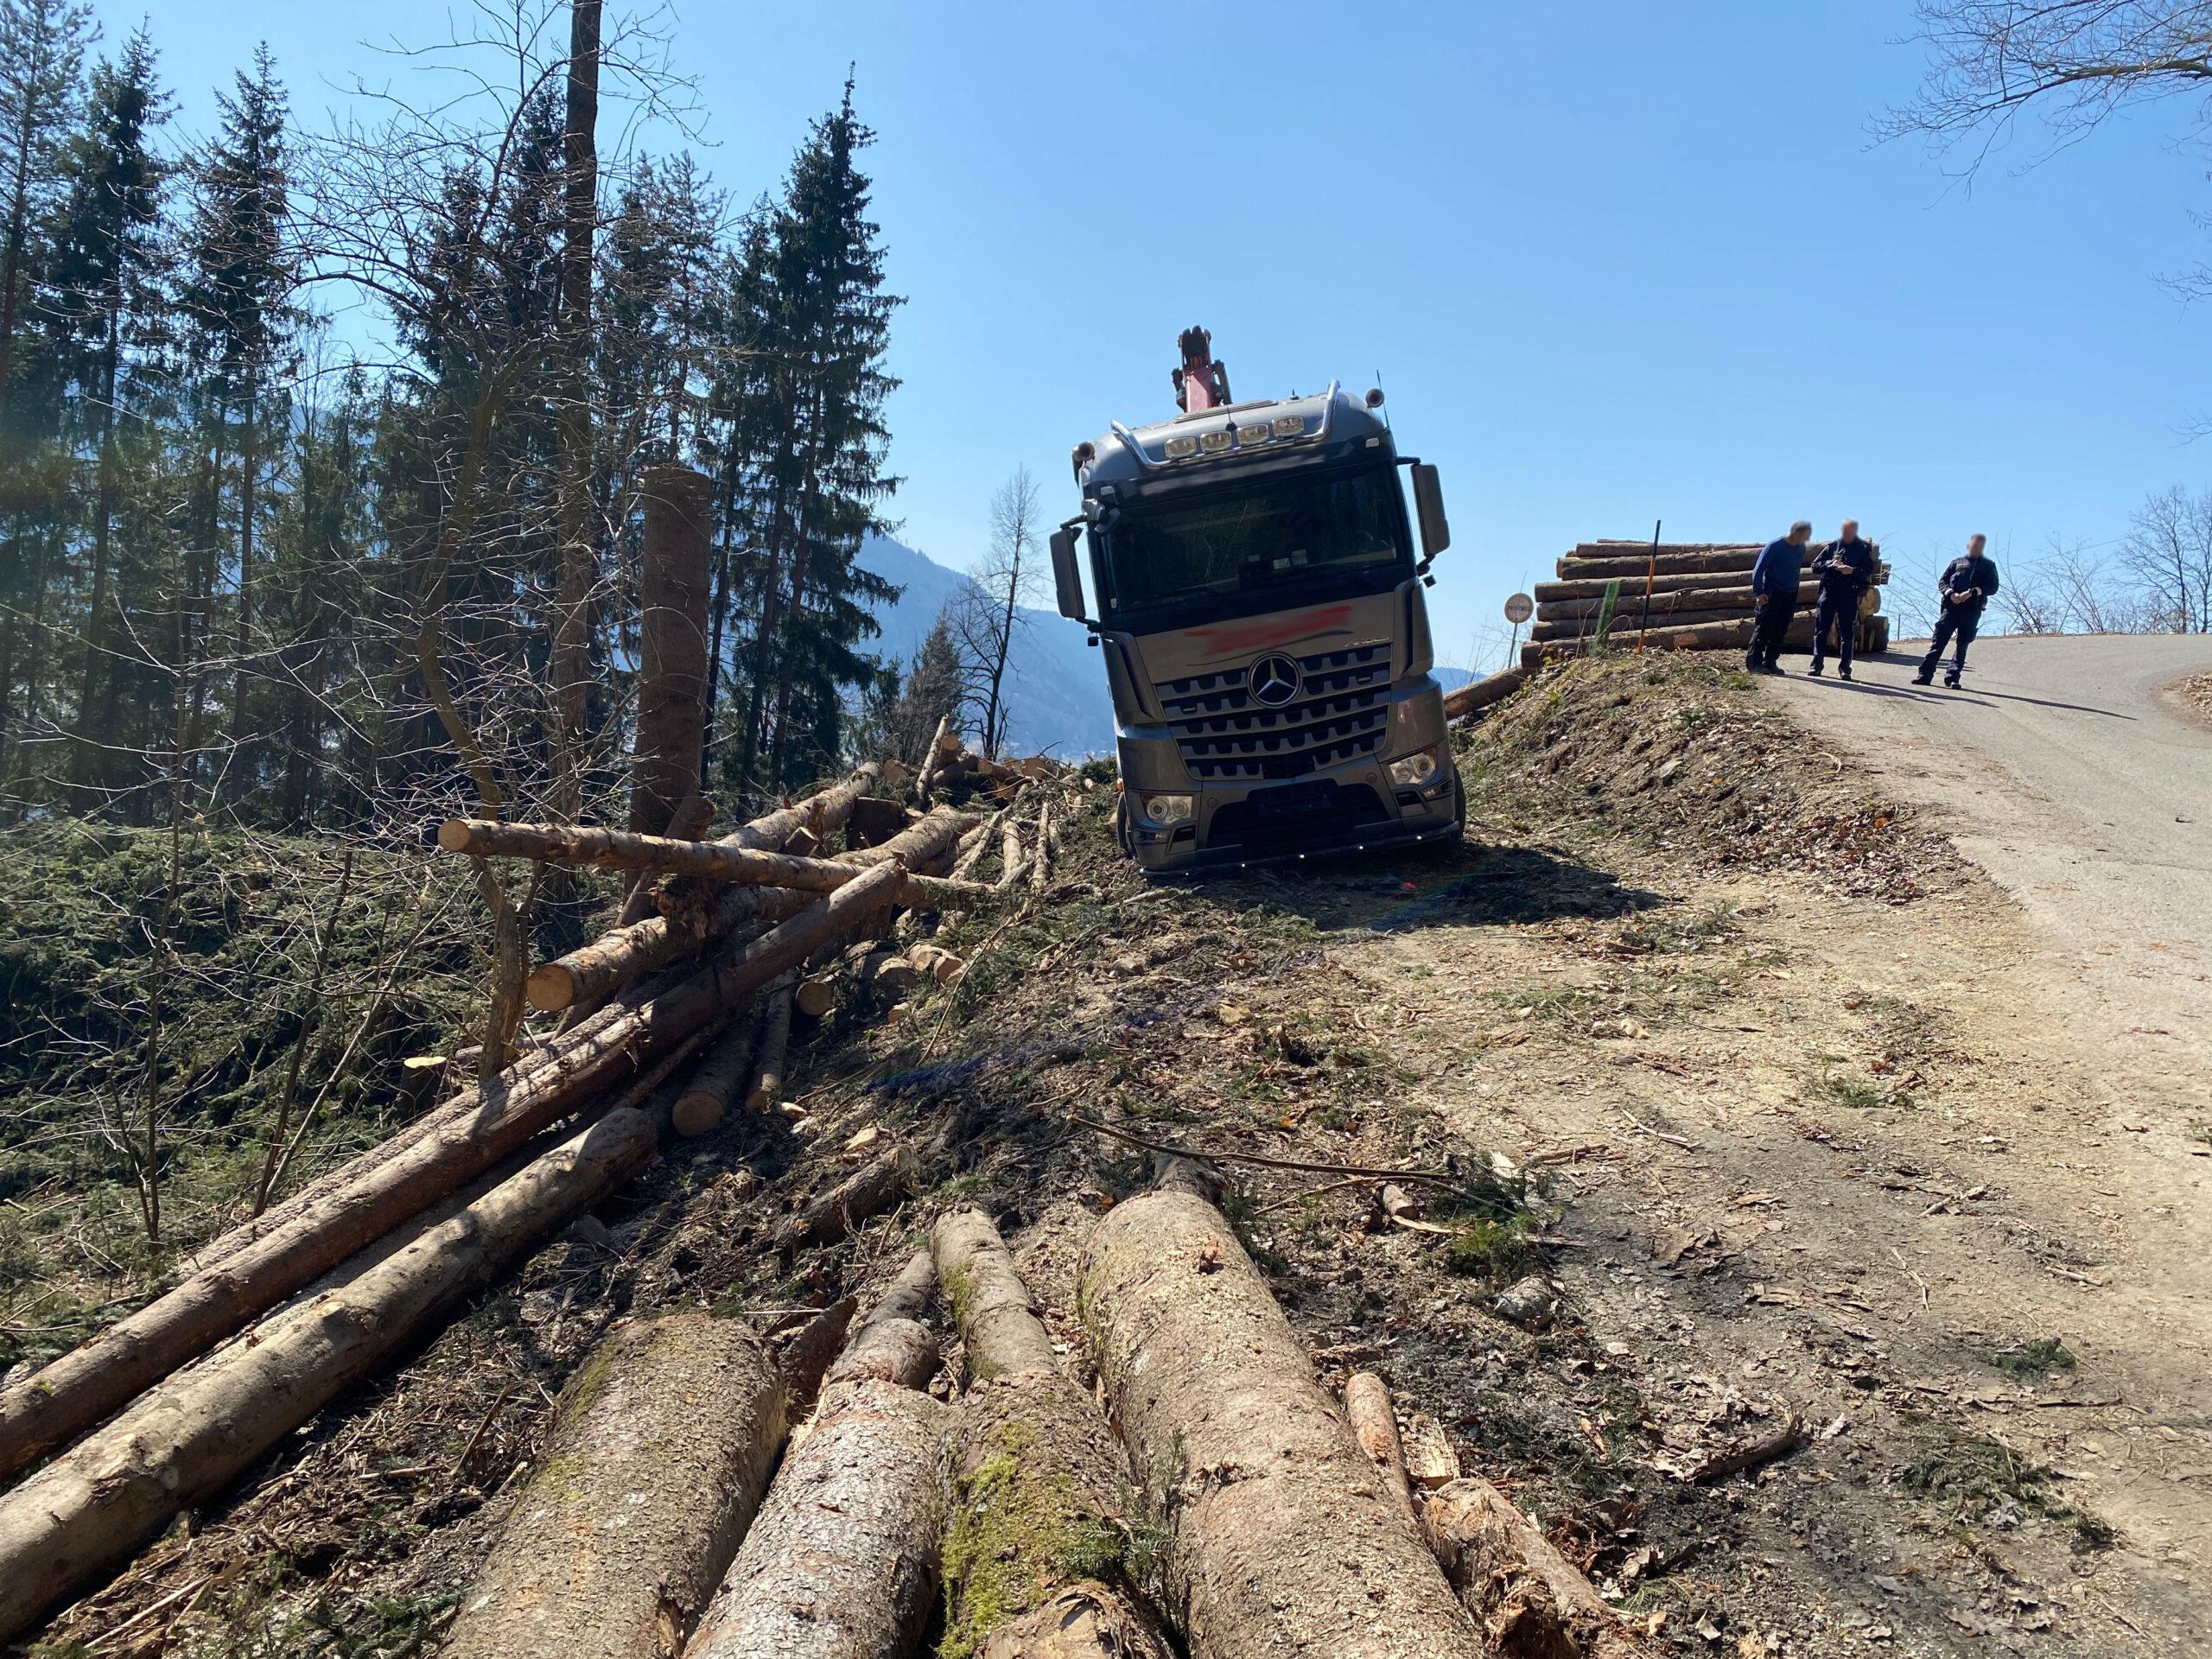 LKW von Feuerwehr vor Absturz bewahrt | Ossiacher See News